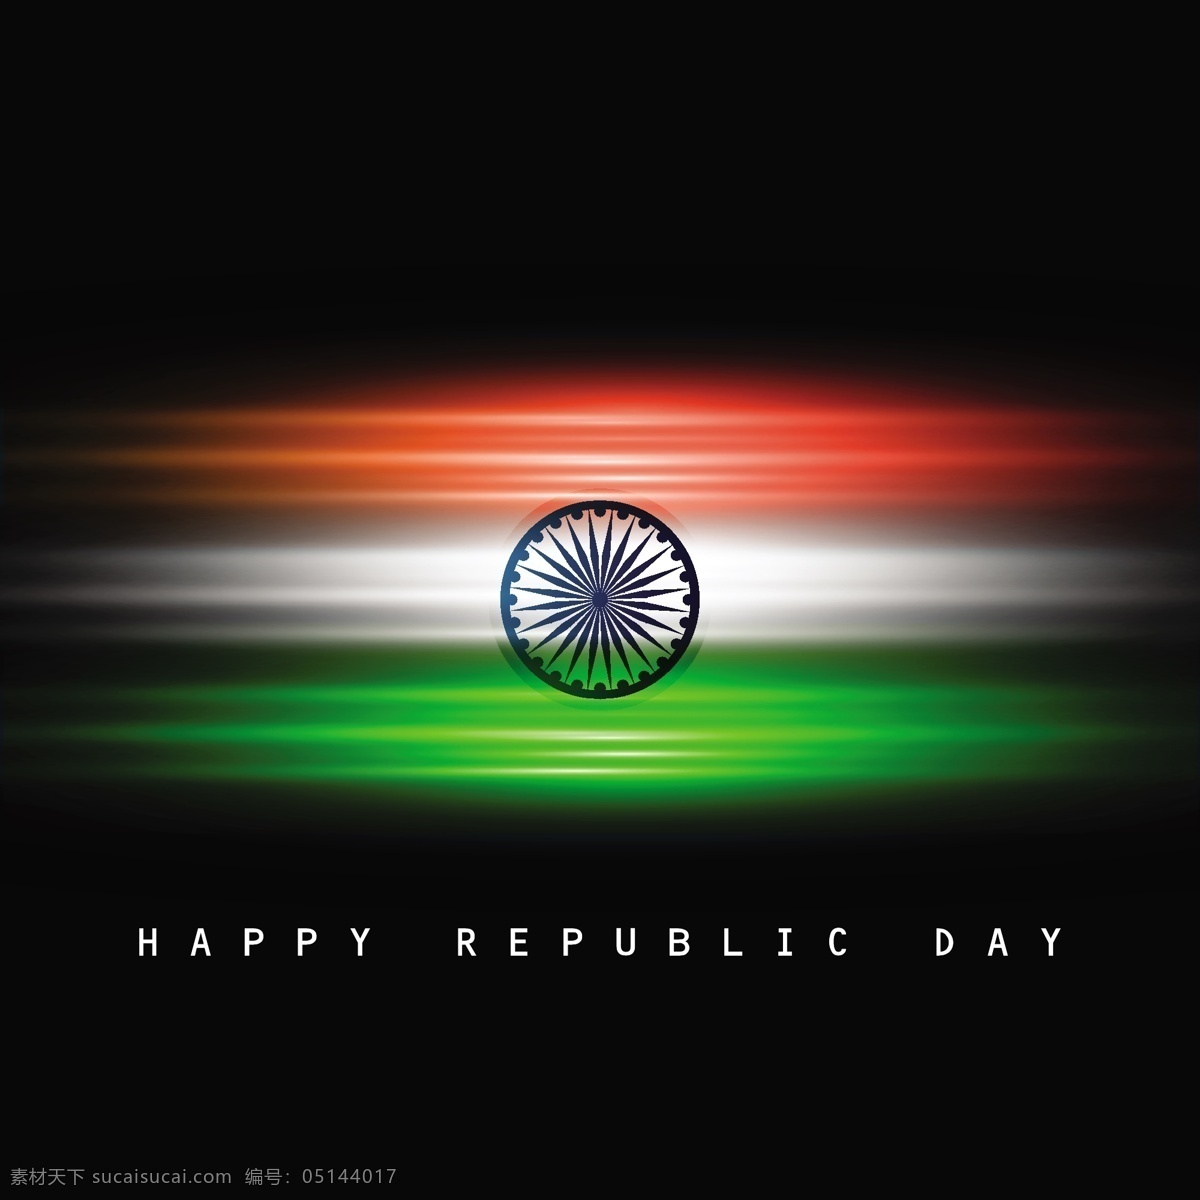 光泽 印度 国旗 卡 背景 抽象 节日 车轮 和平 印度国旗 独立日 国家 自由 一天 政府 波浪 有光泽 爱国 一月 独立 黑色